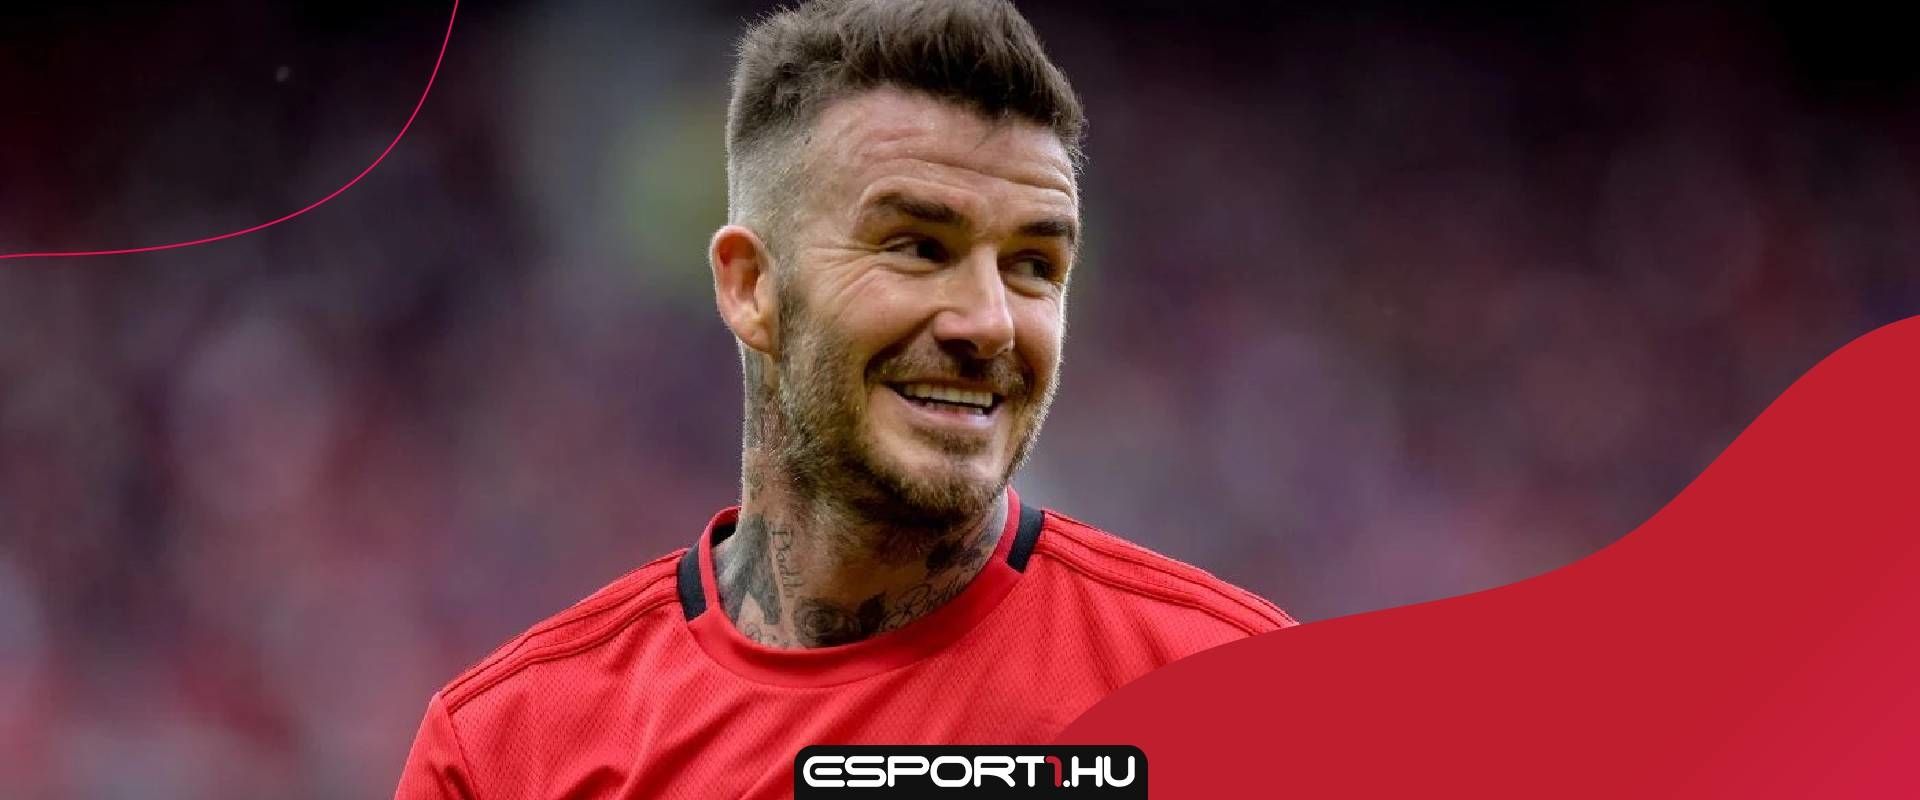 Az alábbi statokkal jöhet Beckham a FIFA 21 FUT-ba?